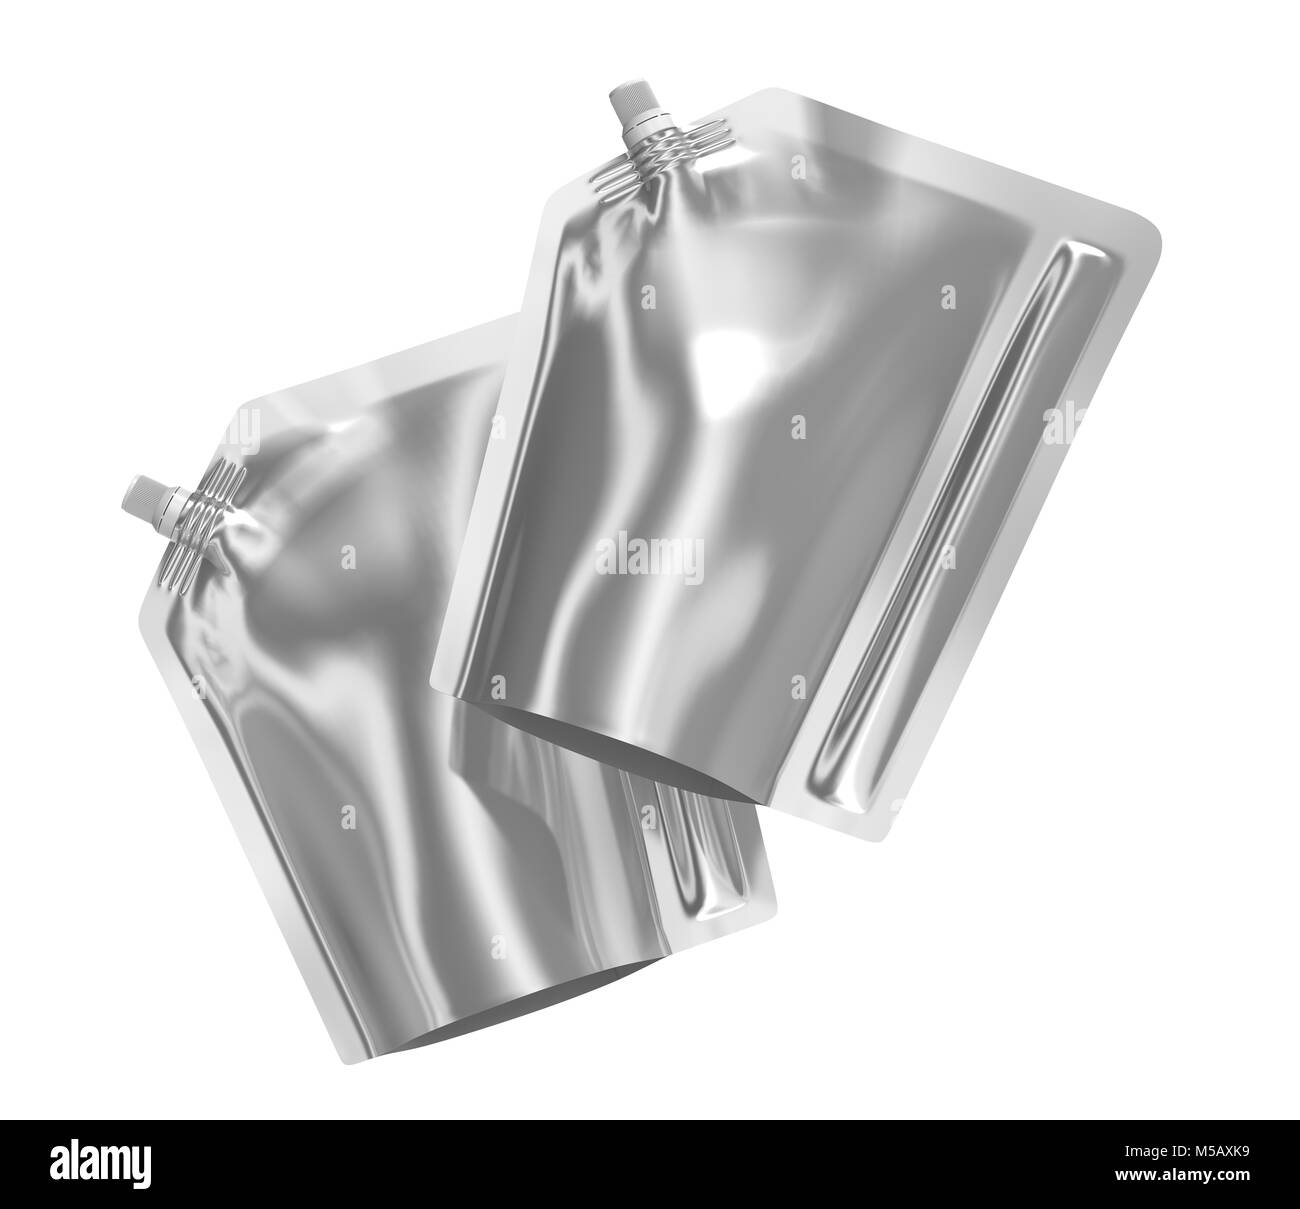 Detergente confezione di ricarica, 3d rendering argento stand-up sacchetto custodia mockup insieme con il cappuccio galleggianti in aria Foto Stock